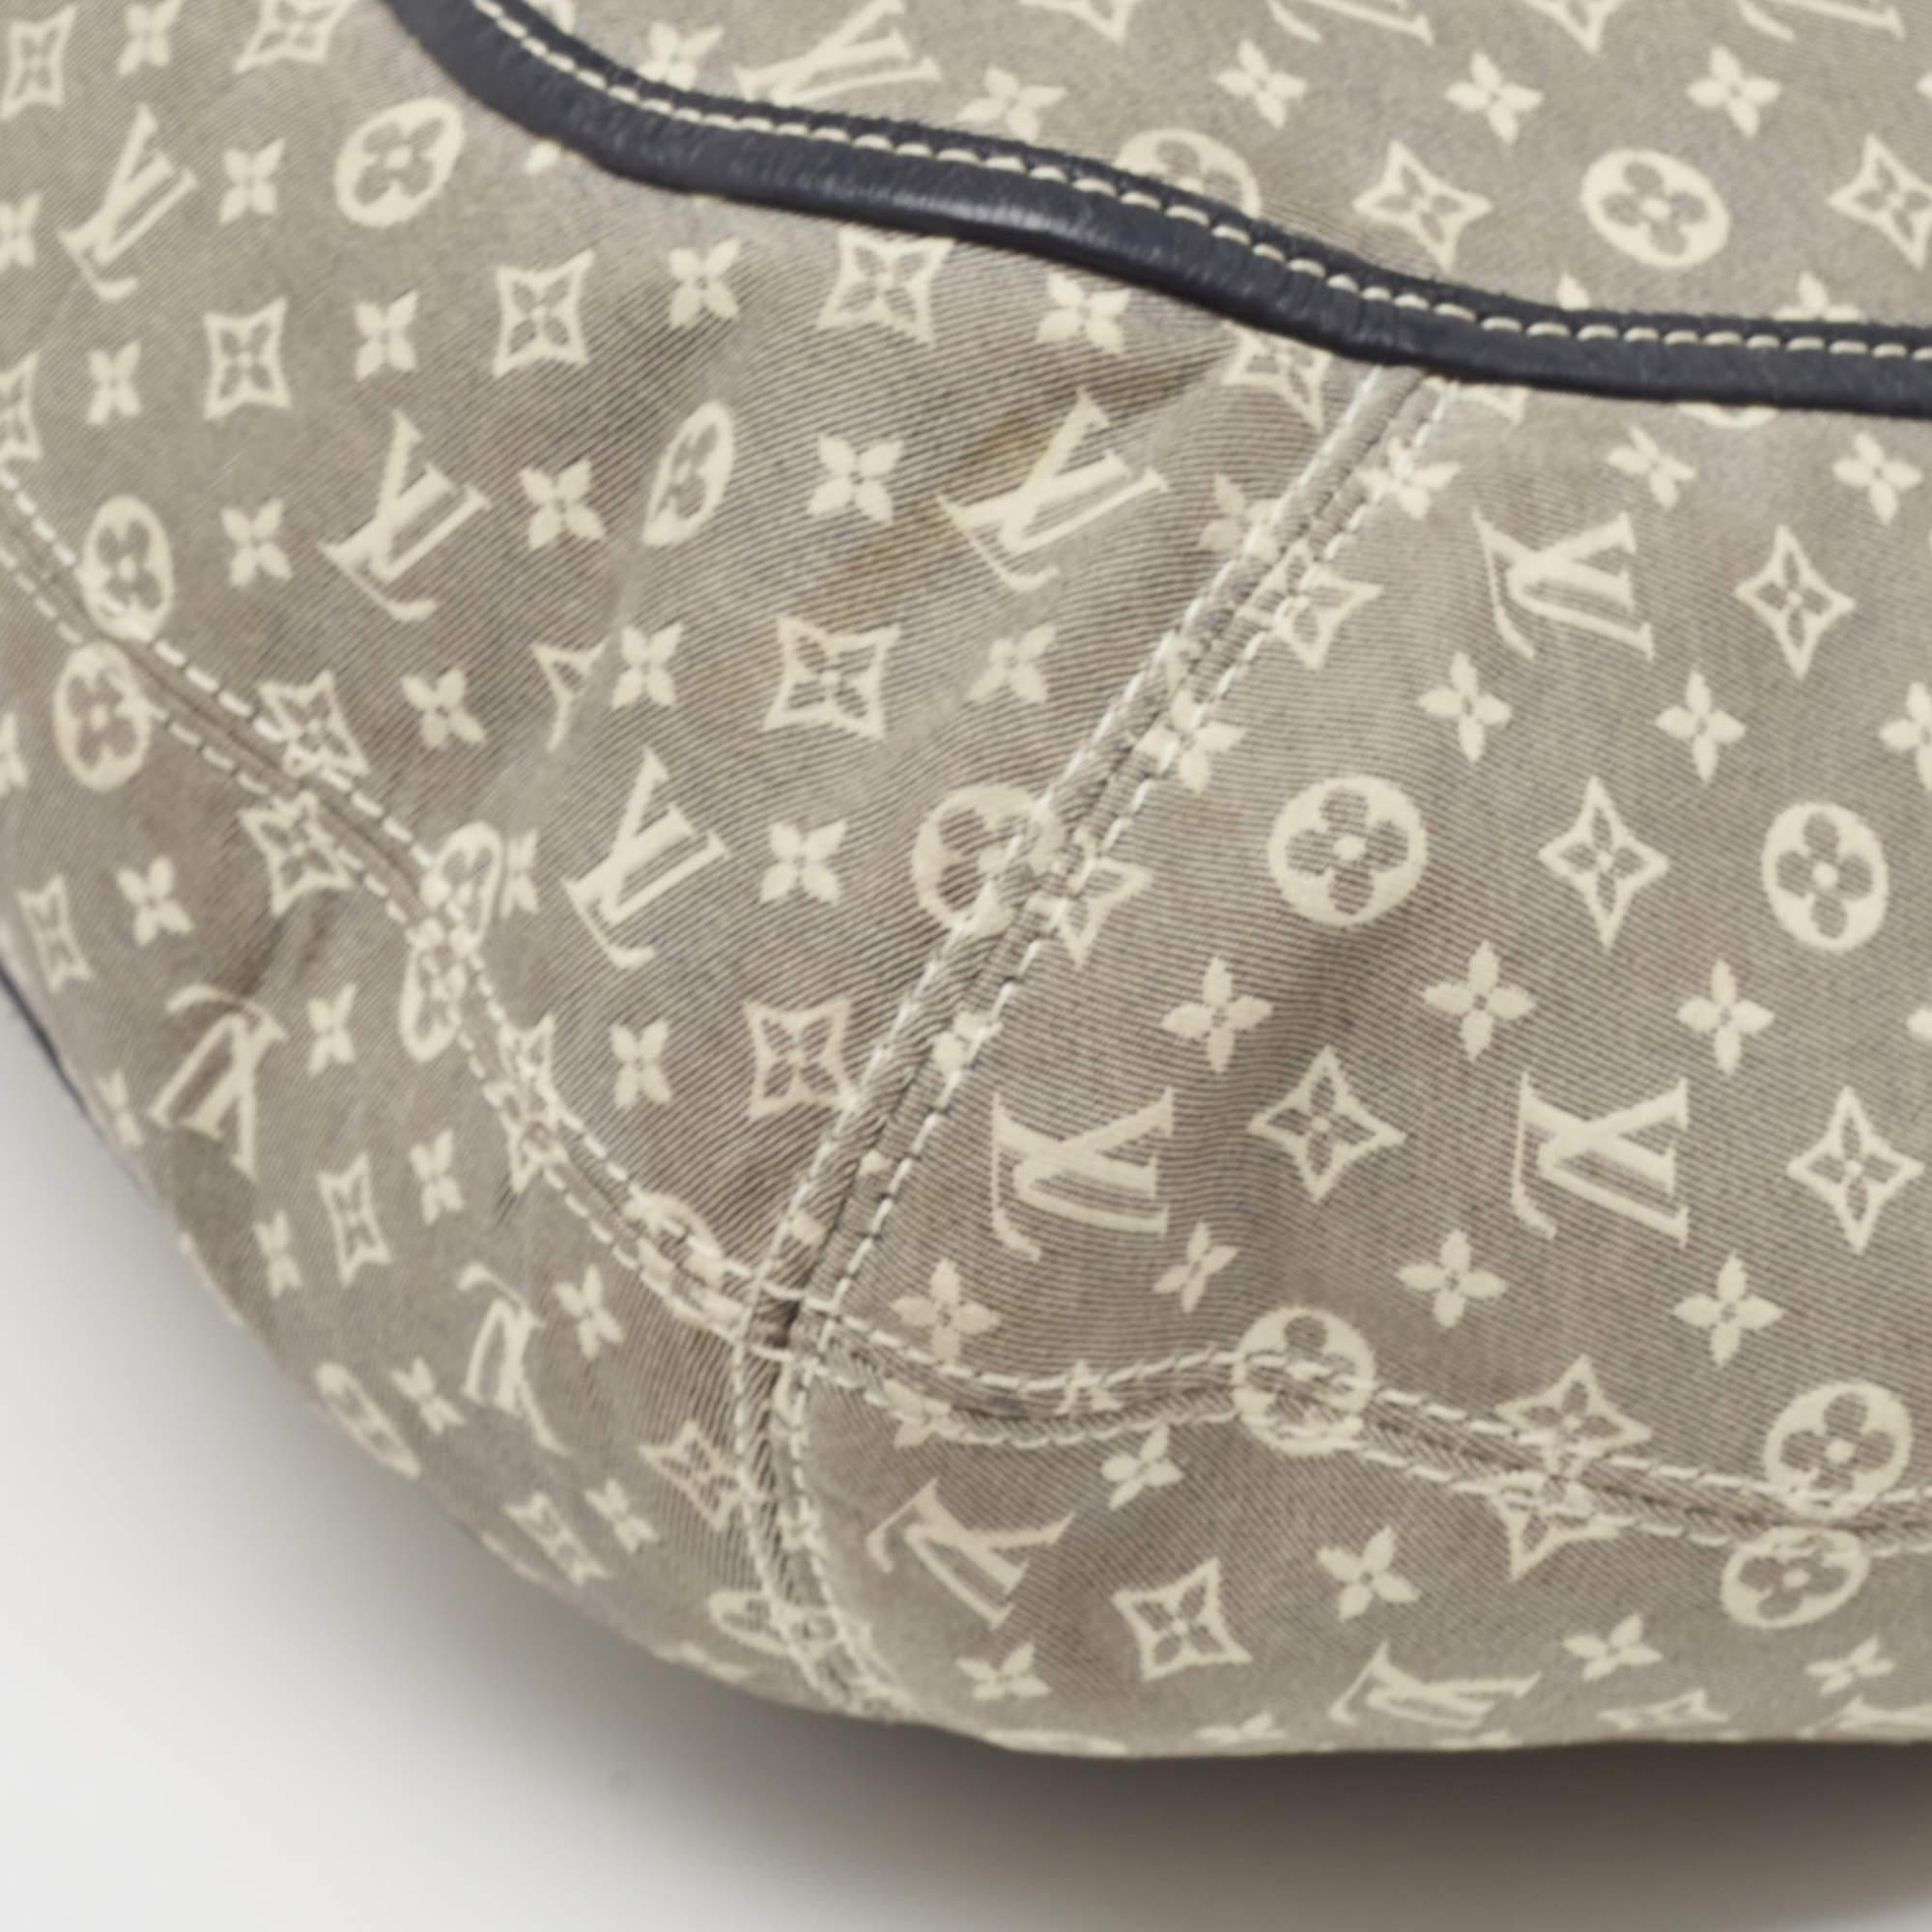 Louis Vuitton Encre Monogram Idylle Romance Bag In Fair Condition For Sale In Dubai, Al Qouz 2